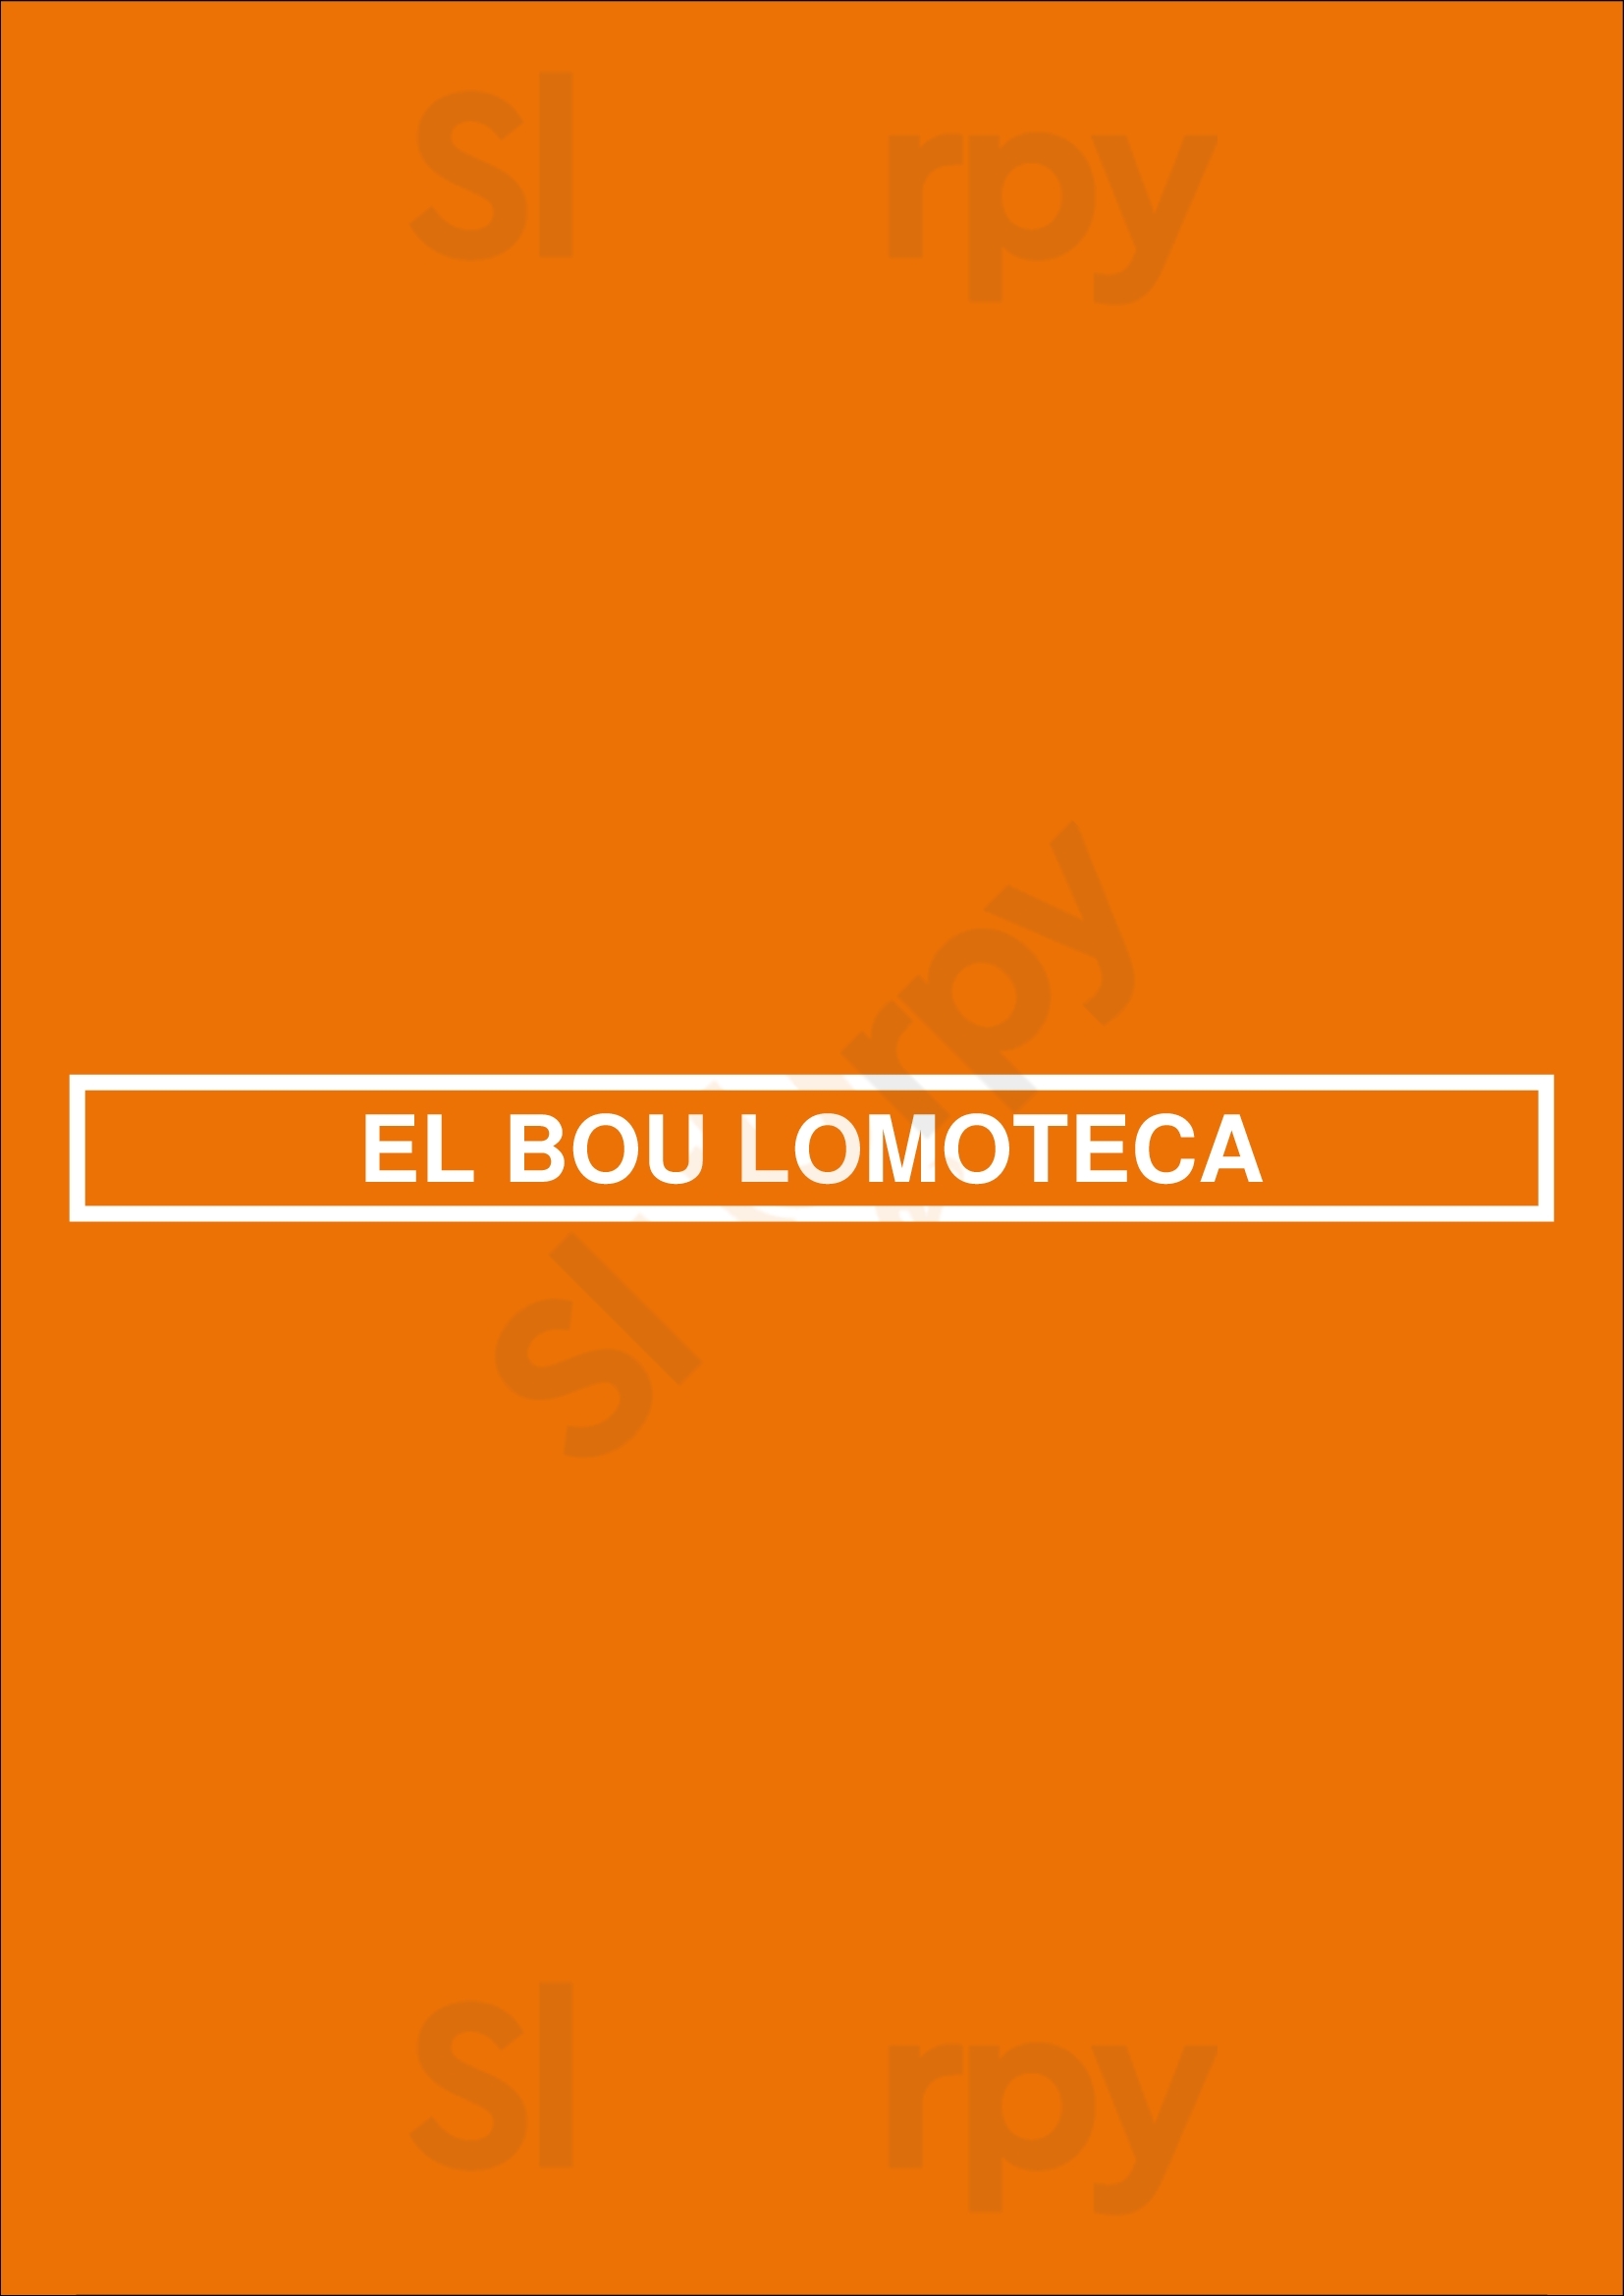 El Bou Lomoteca Barcelona Menu - 1